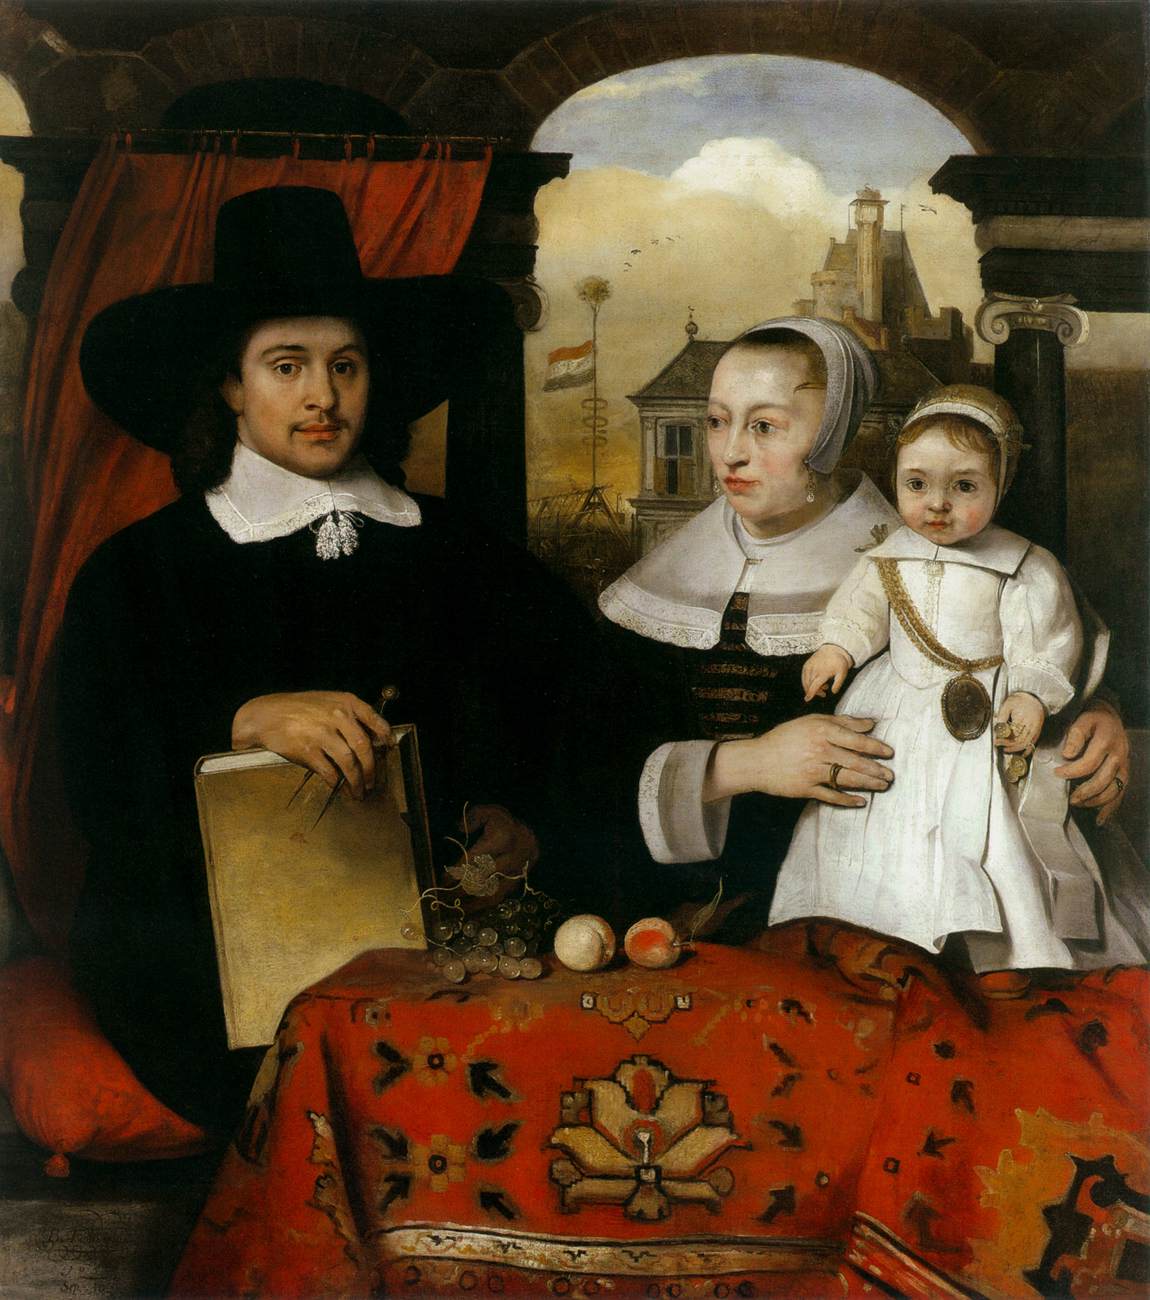 Willem van der Helm et son portrait de famille